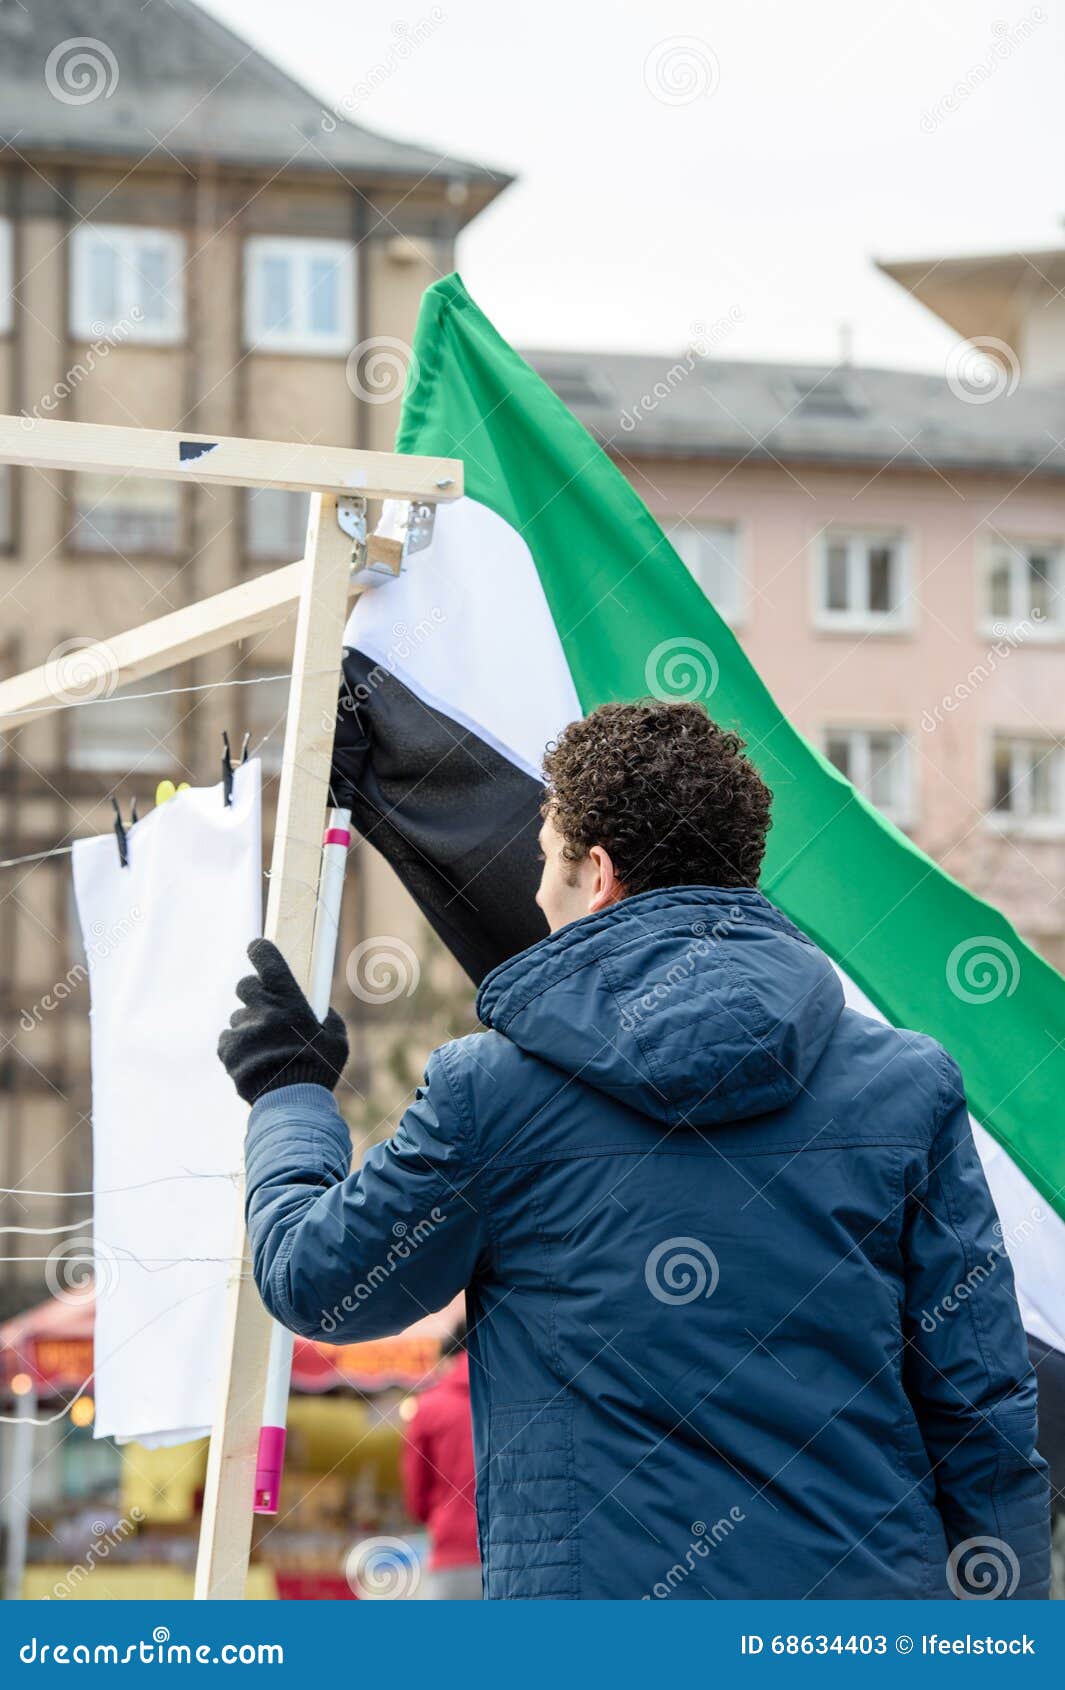 Syrische diaspora protesten tegen Syrische oorlog. STRAATSBURG, FRANKRIJK - BRENG 19, 2016 IN DE WAR: De mens die Syrische vlag houden als Syrische diaspora protesteert in centrum van Straatsburg aan het aan de kaak stellen van de Syrische aanvallen en toont solidariteit met de Syrische mensen